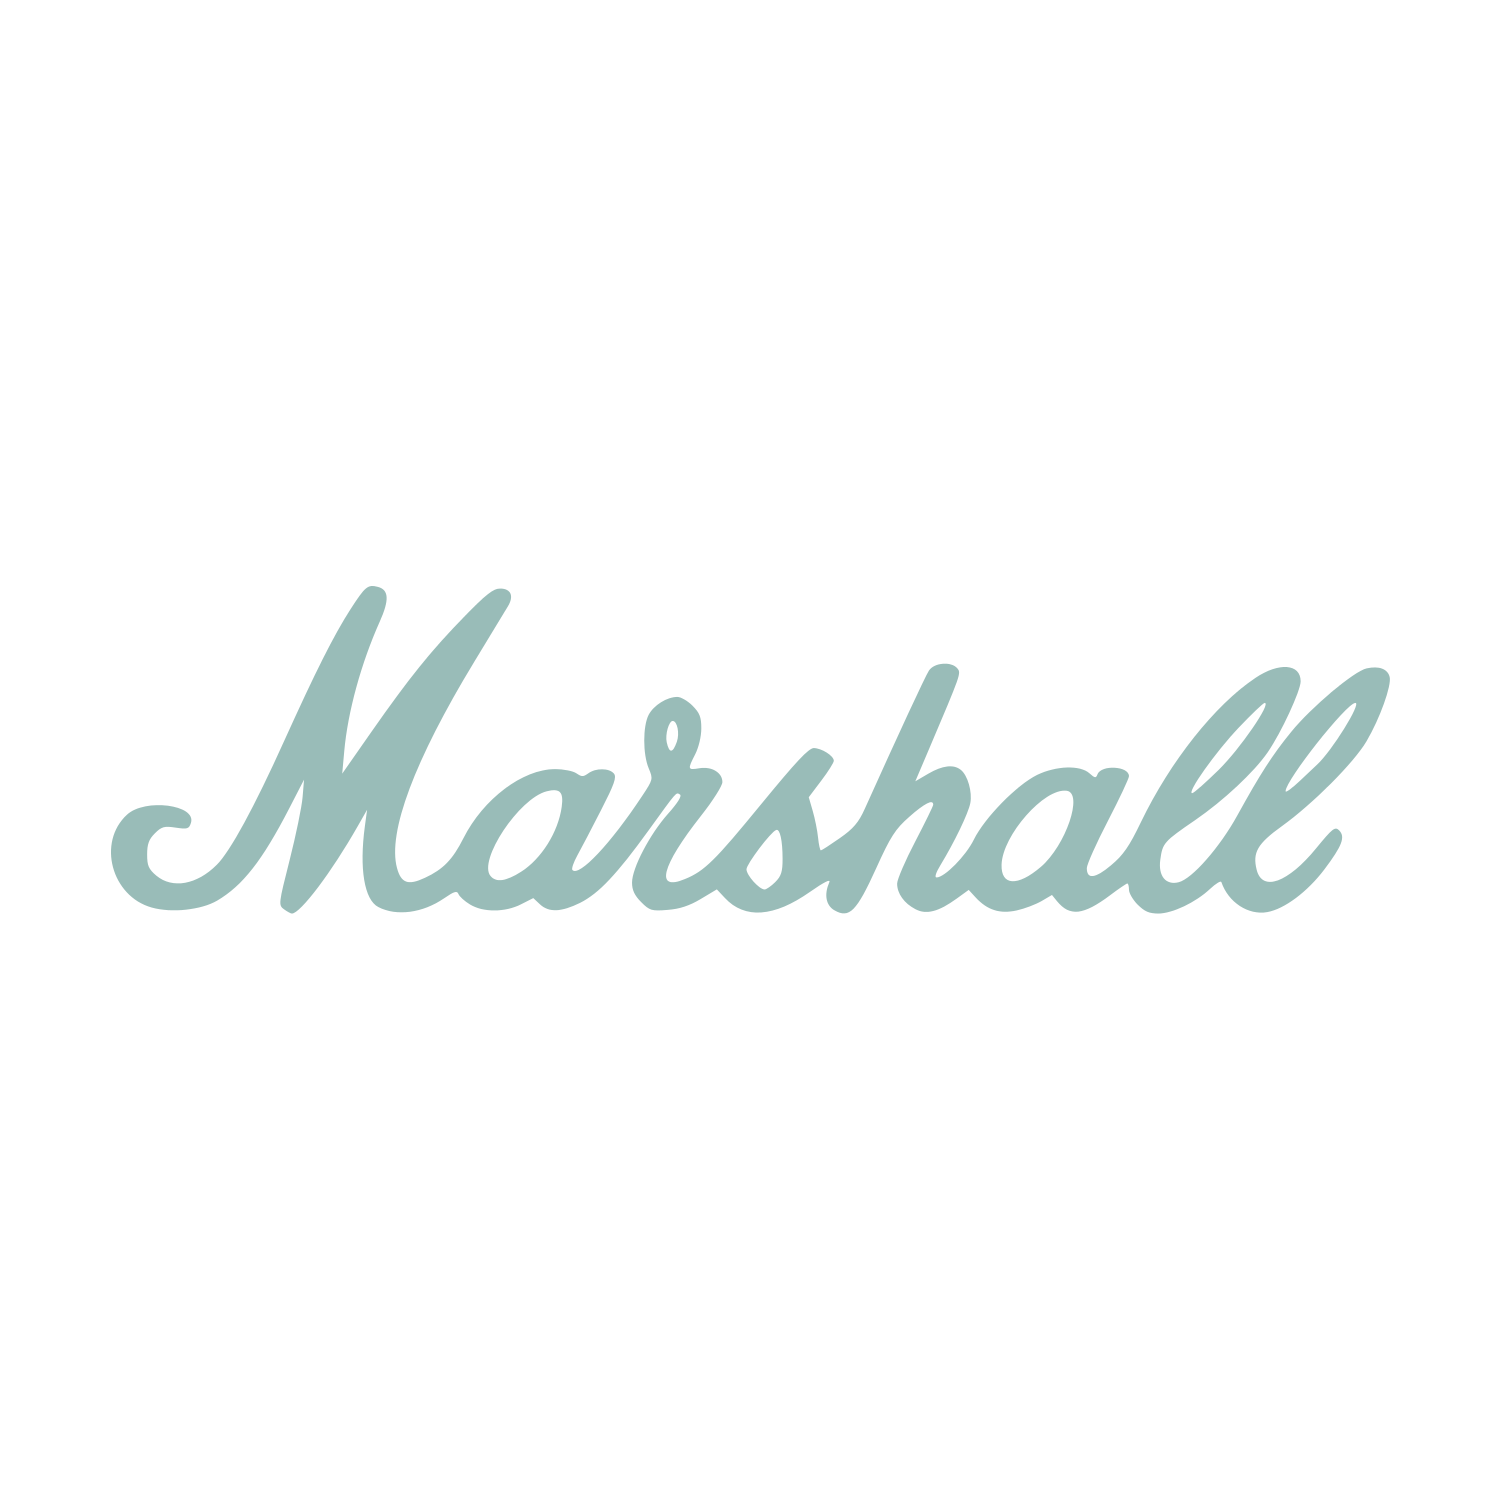 MARSHALL_LOGO.png